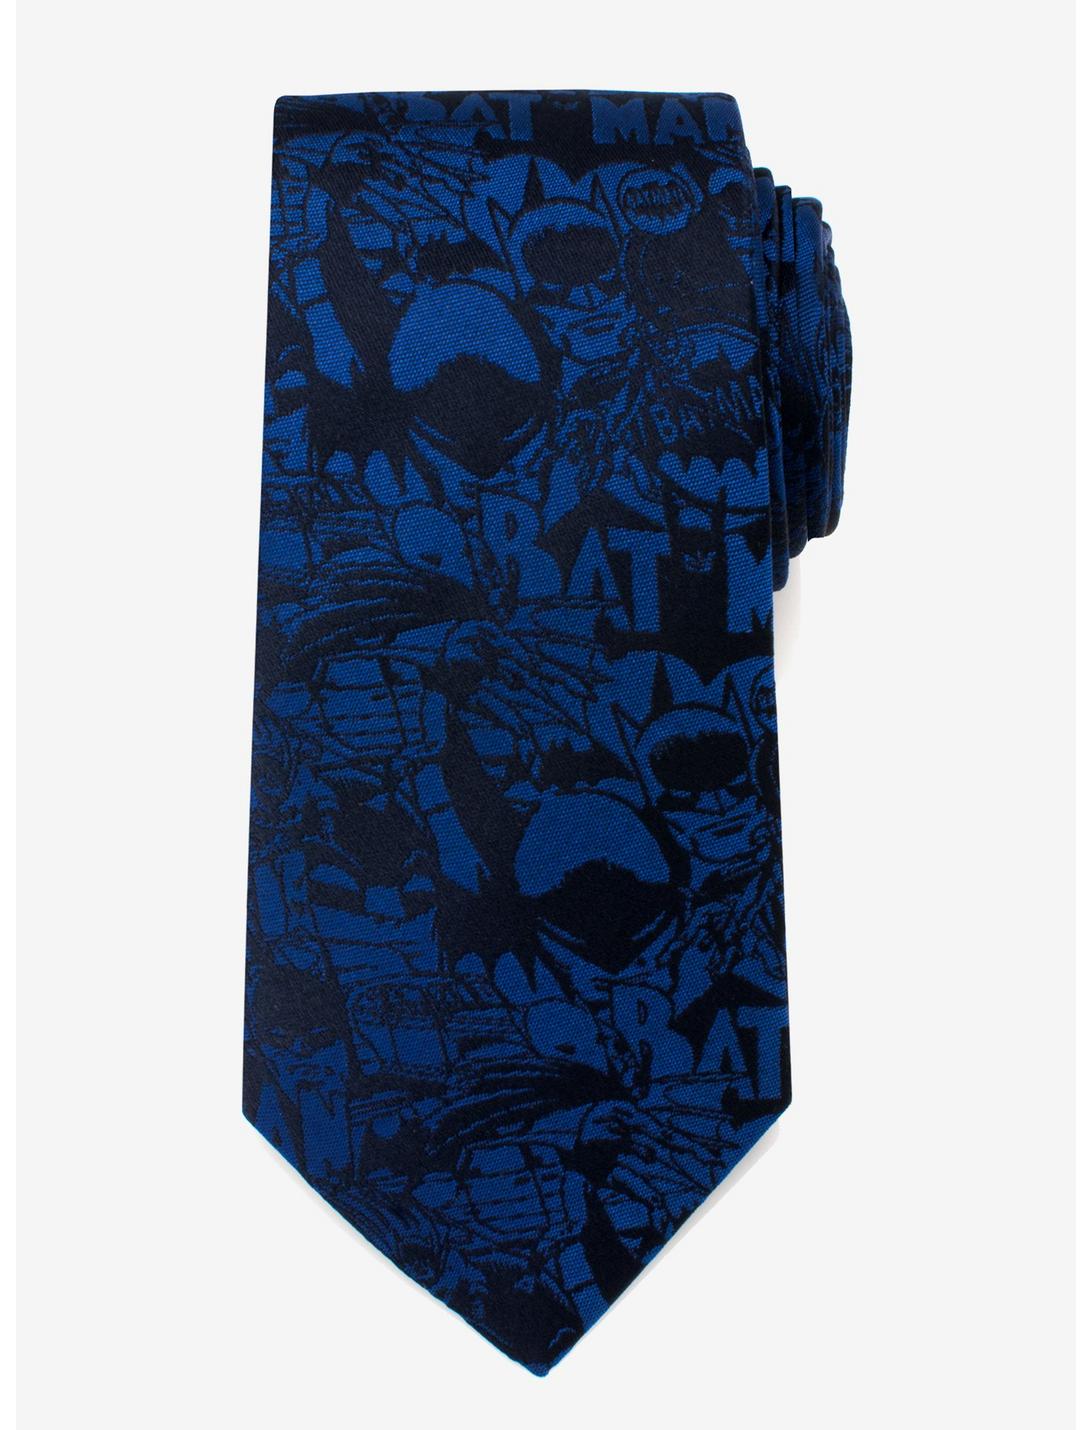 DC Comics Batman Blue Comic Tie, , hi-res